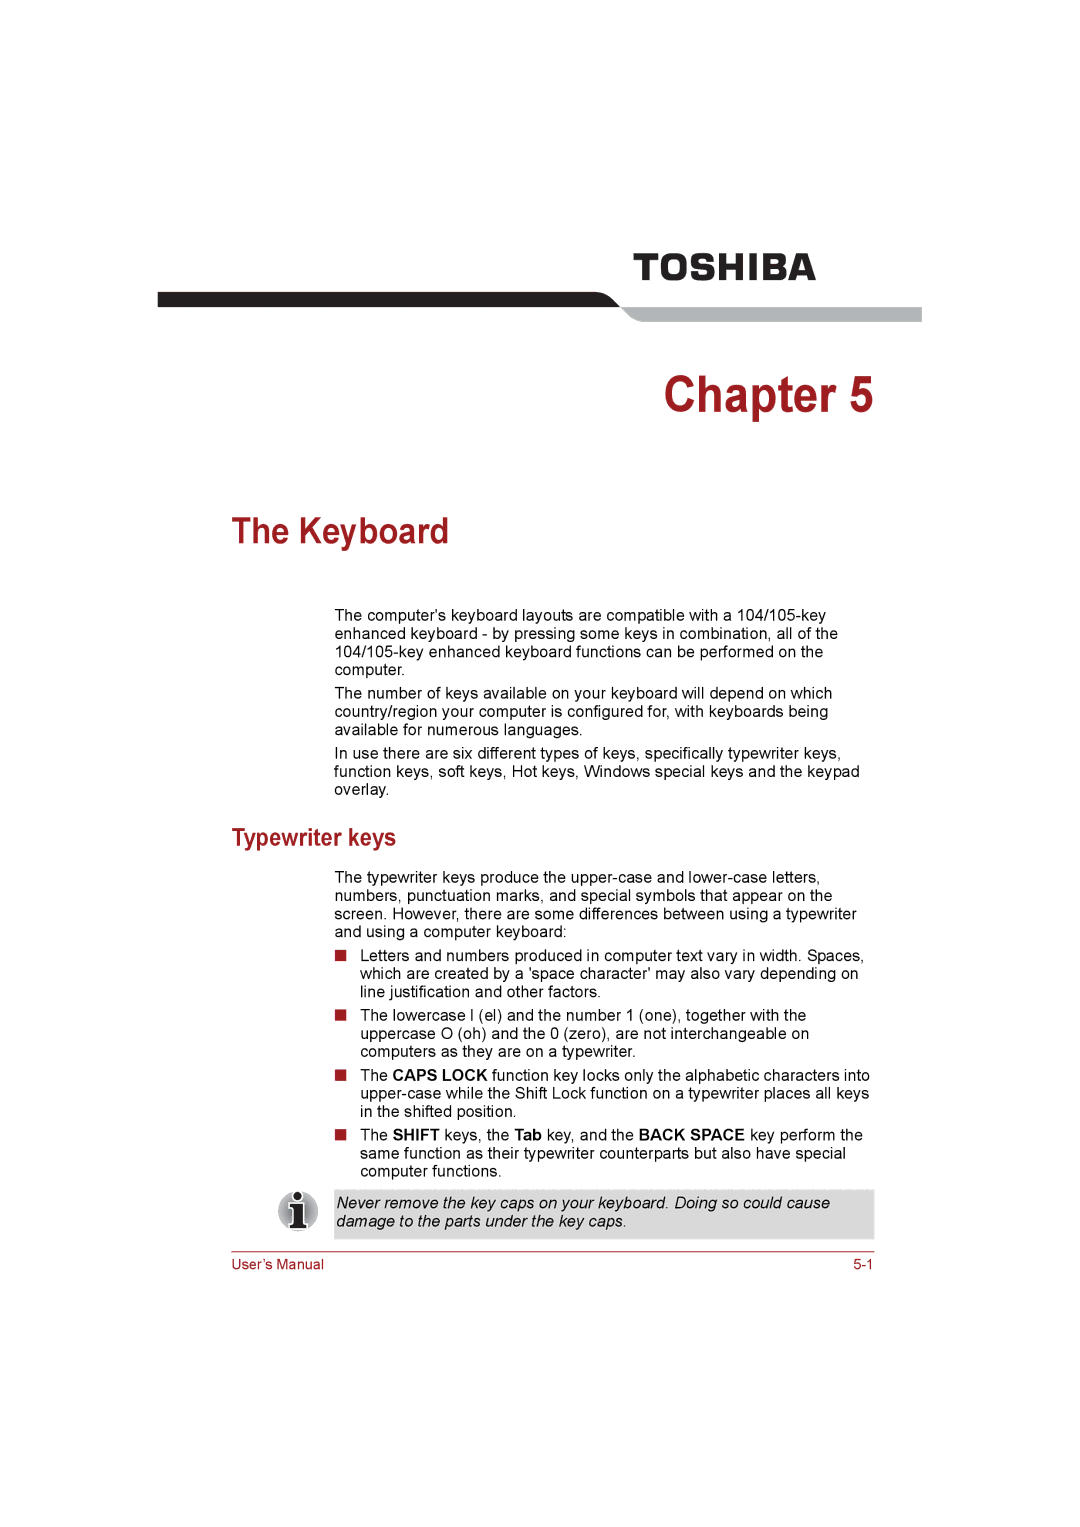 Toshiba NB255N245 user manual Keyboard, Typewriter keys 